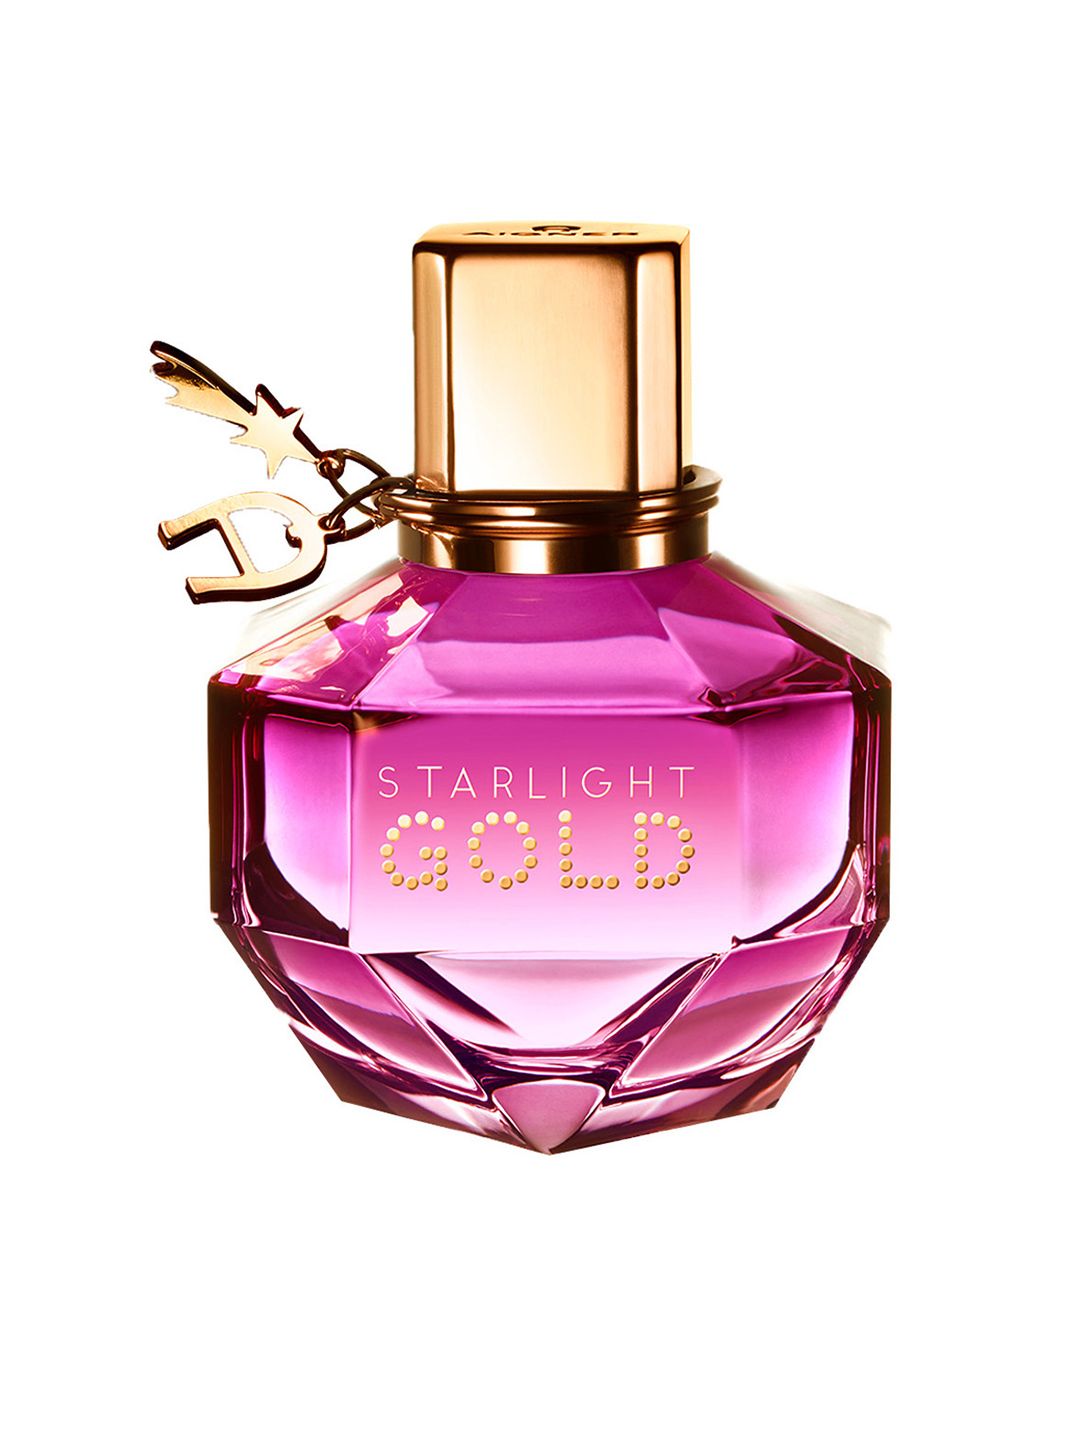 Aigner Women Starlight Gold Eau de Parfum 100ml Price in India